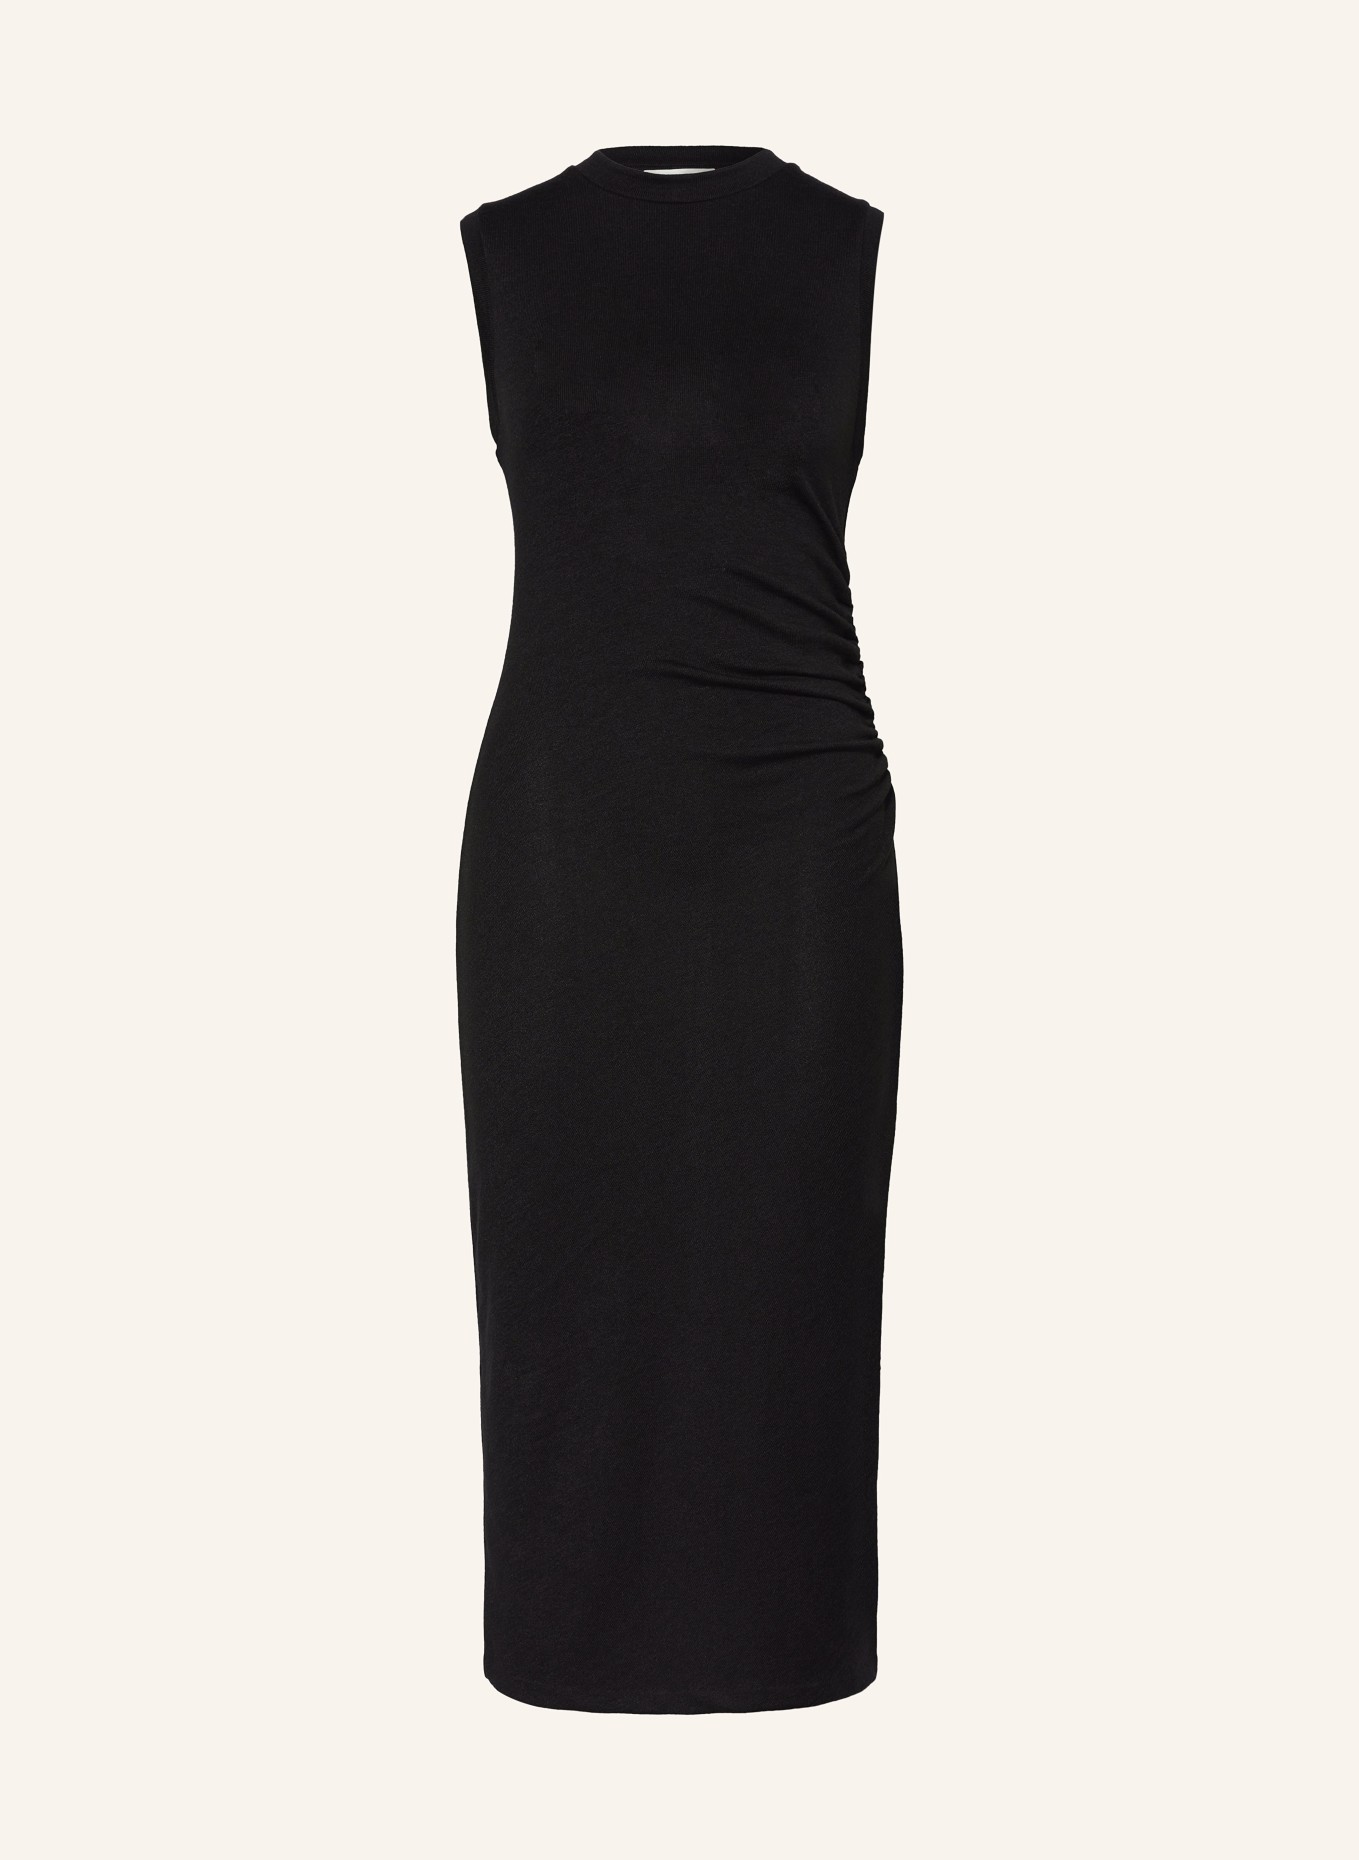 VINCE Knit dress made of linen, Color: BLACK (Image 1)